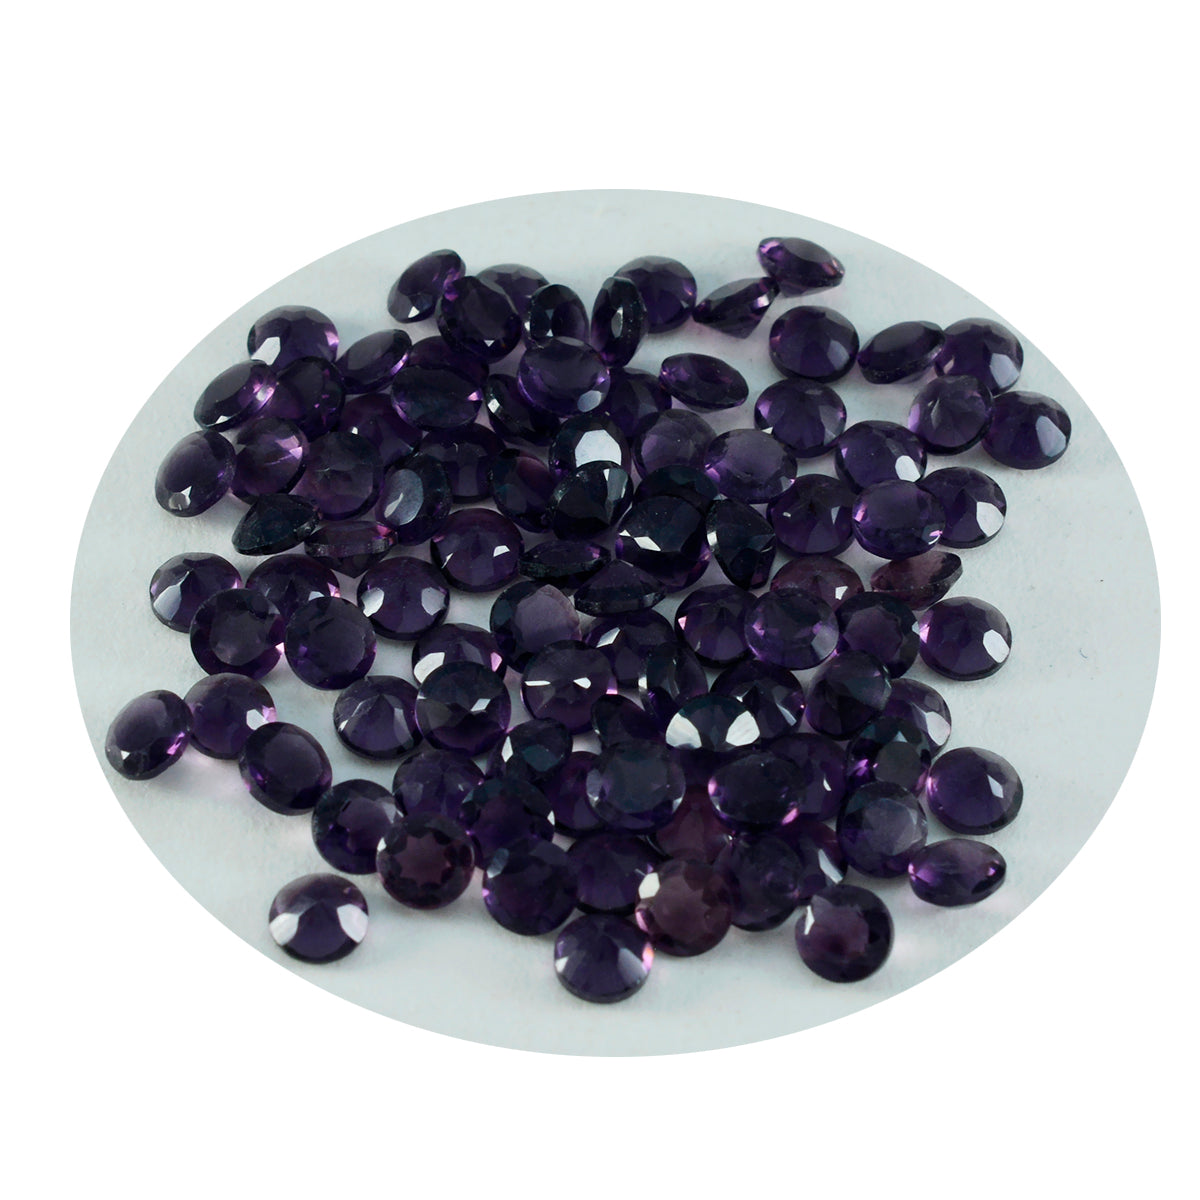 Riyogems 1PC Purple Amethyst CZ Faceted 2x2 mm Round Shape Good Quality Gem